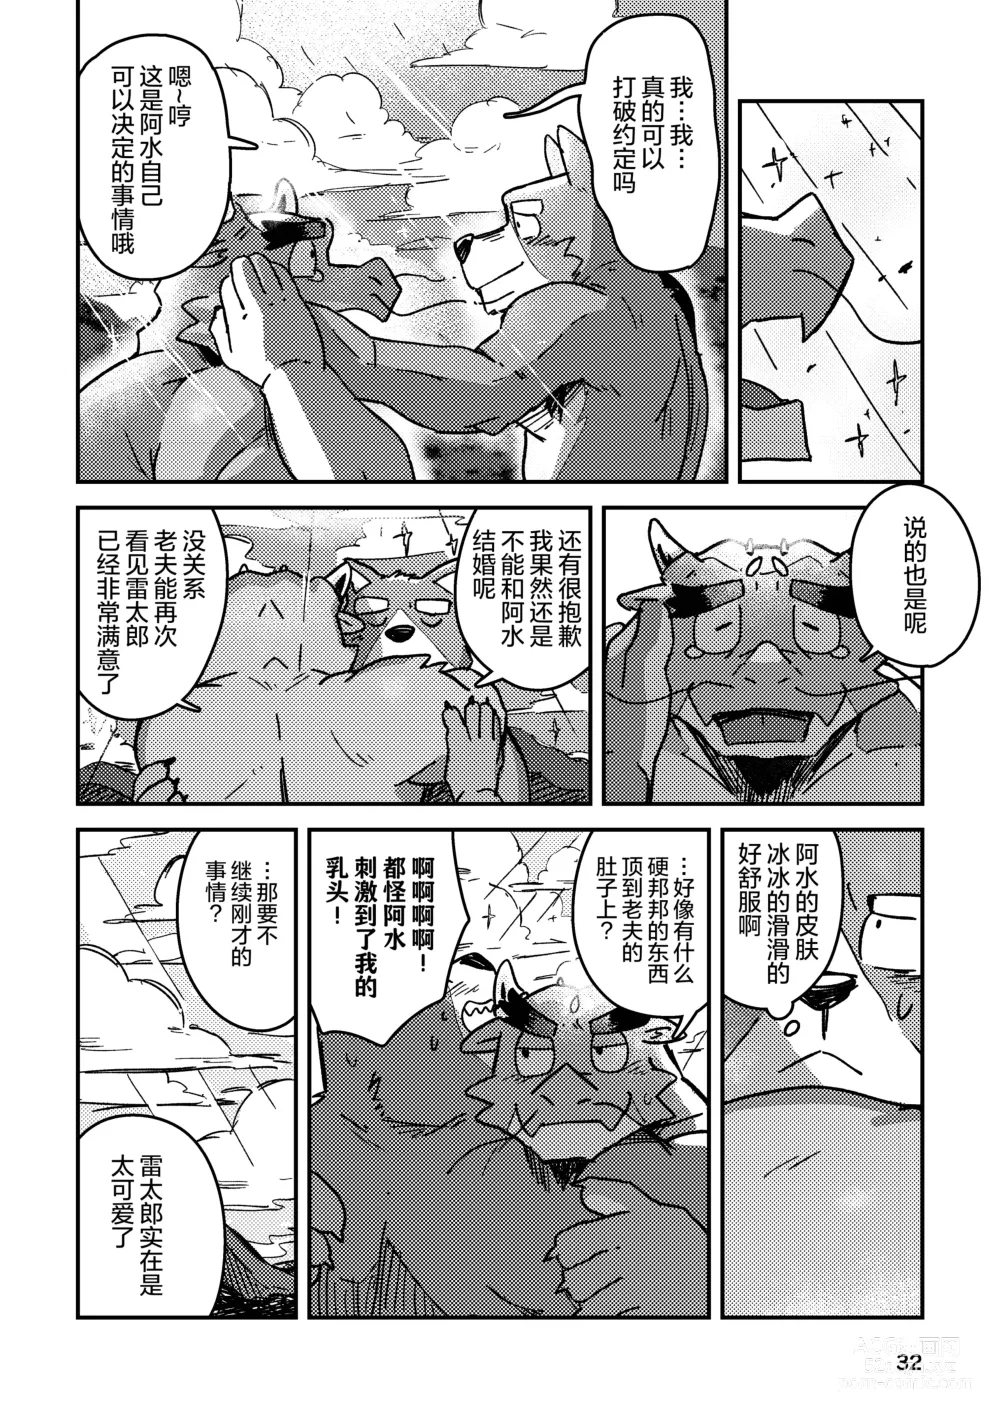 Page 32 of doujinshi 约定的龙穴